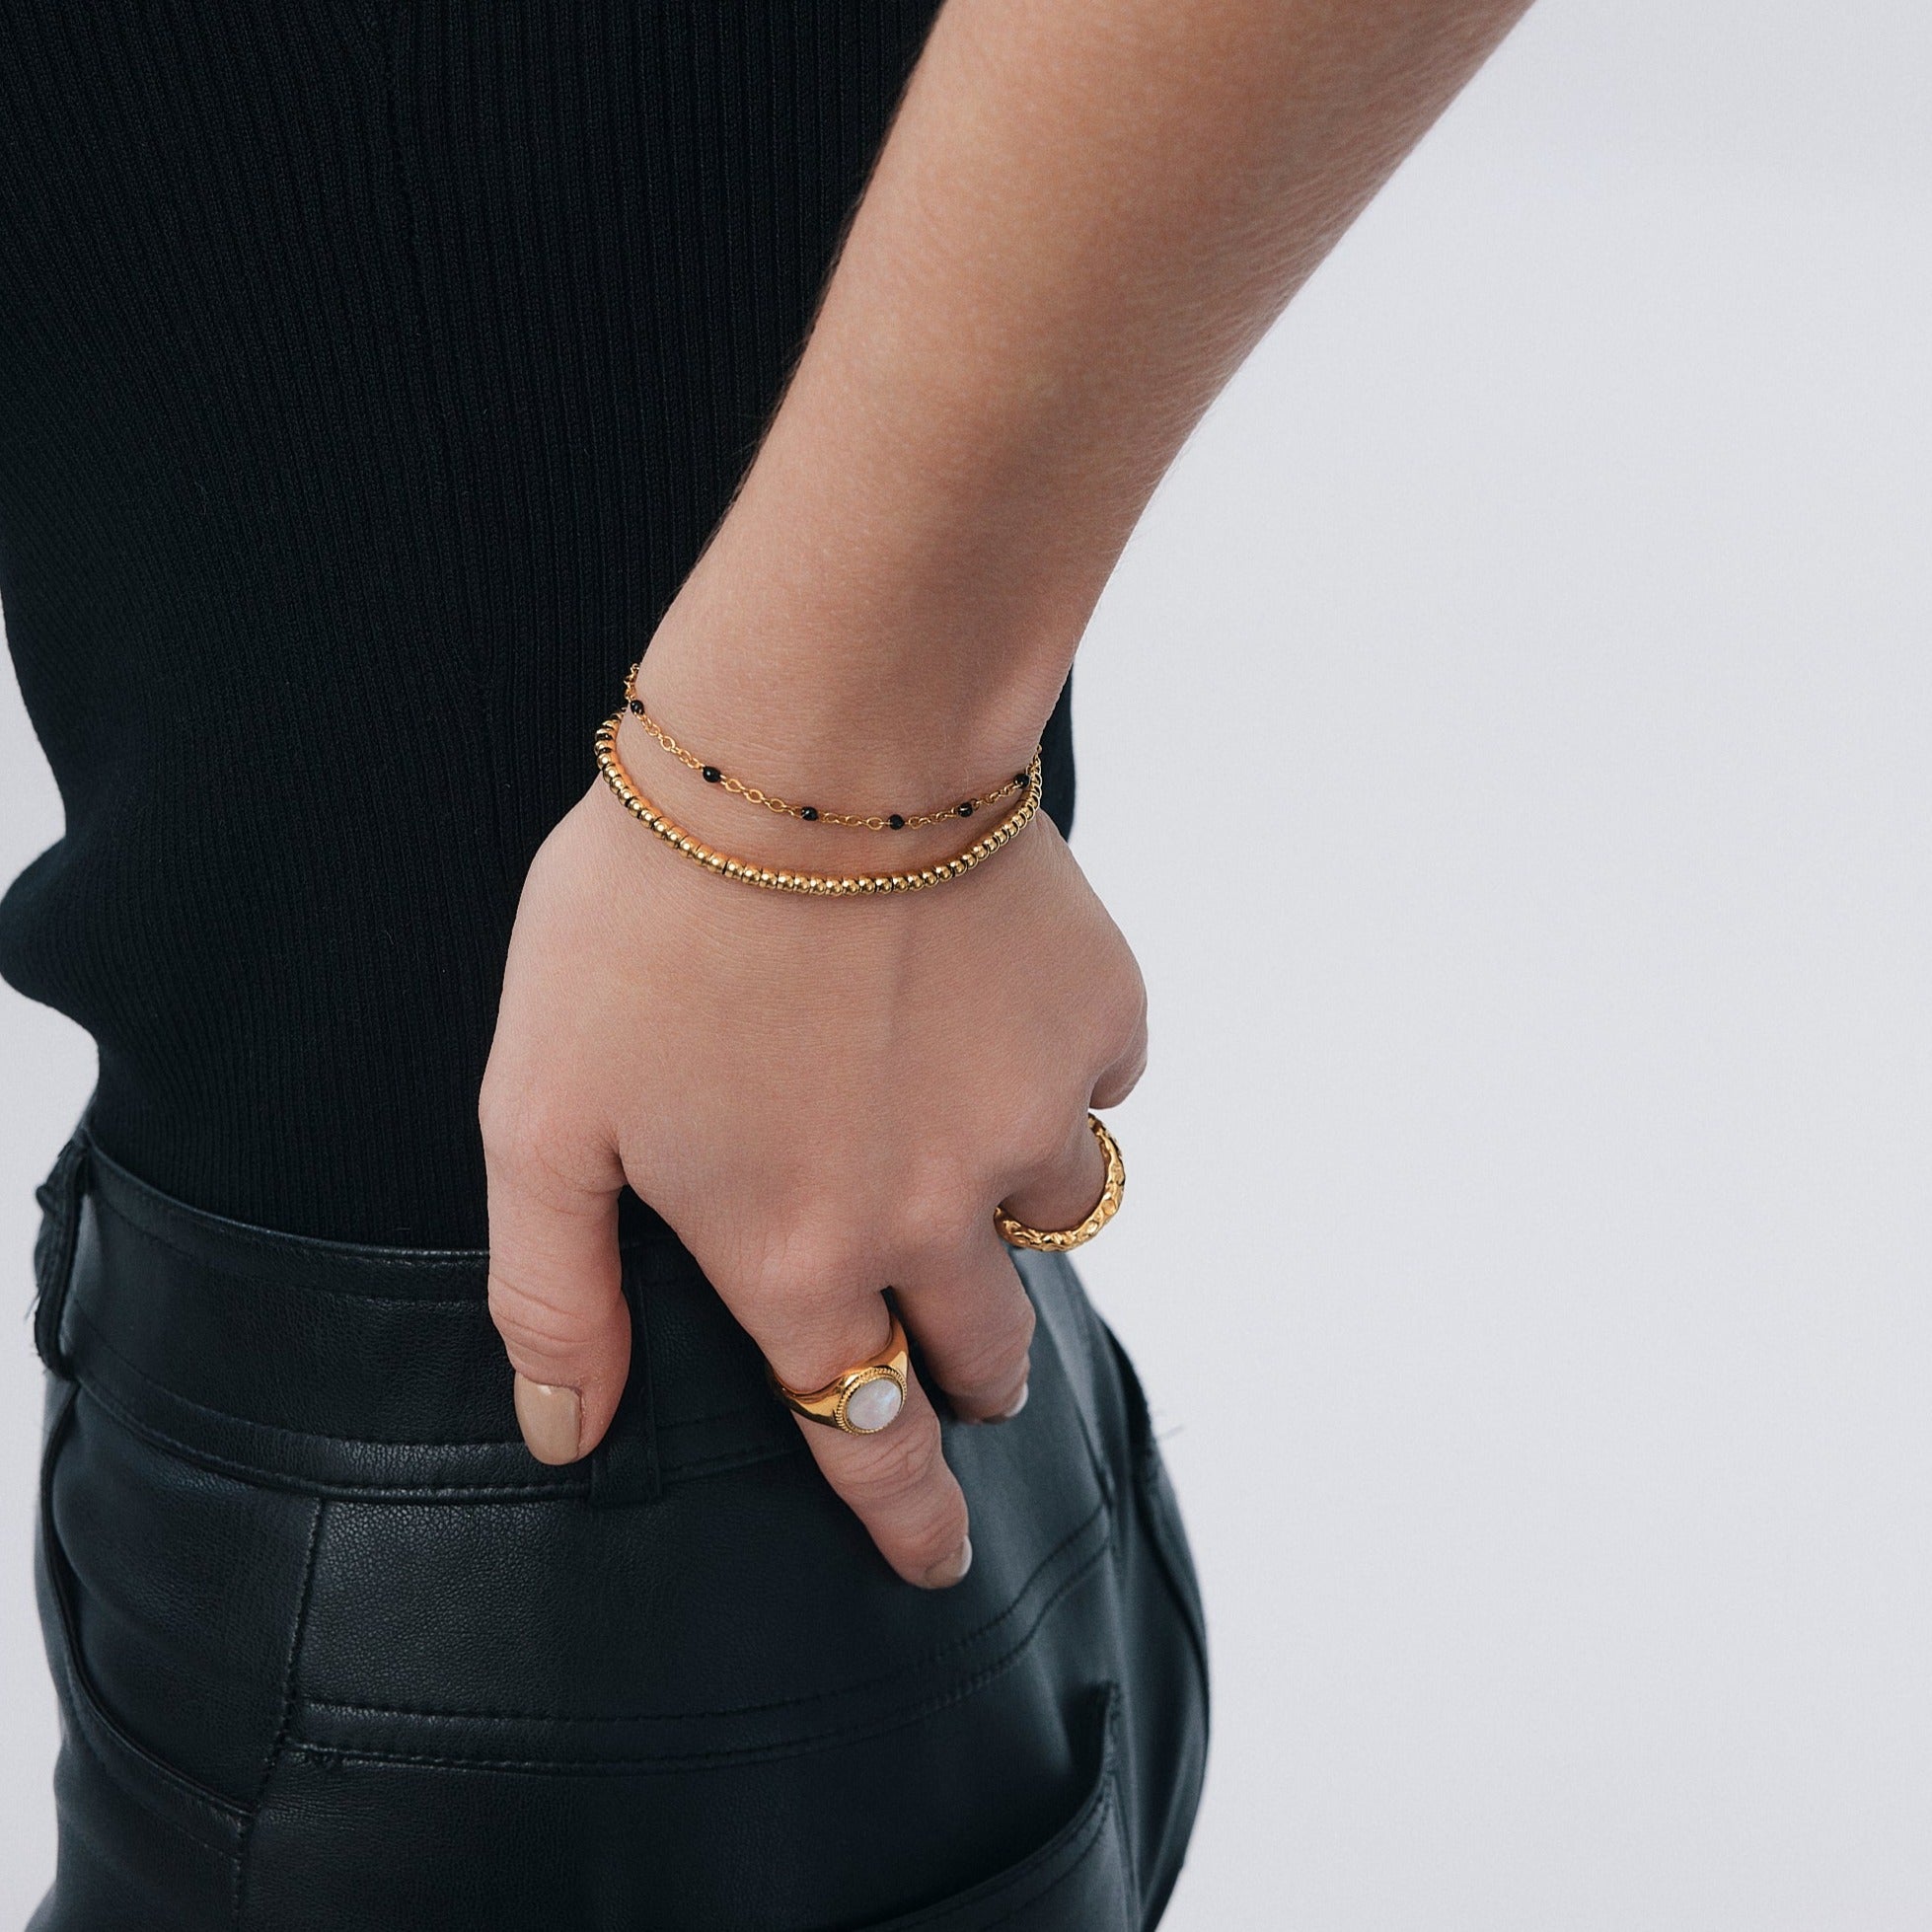 Black Enamel Beaded Bracelet in Gold - Flaire & Co.